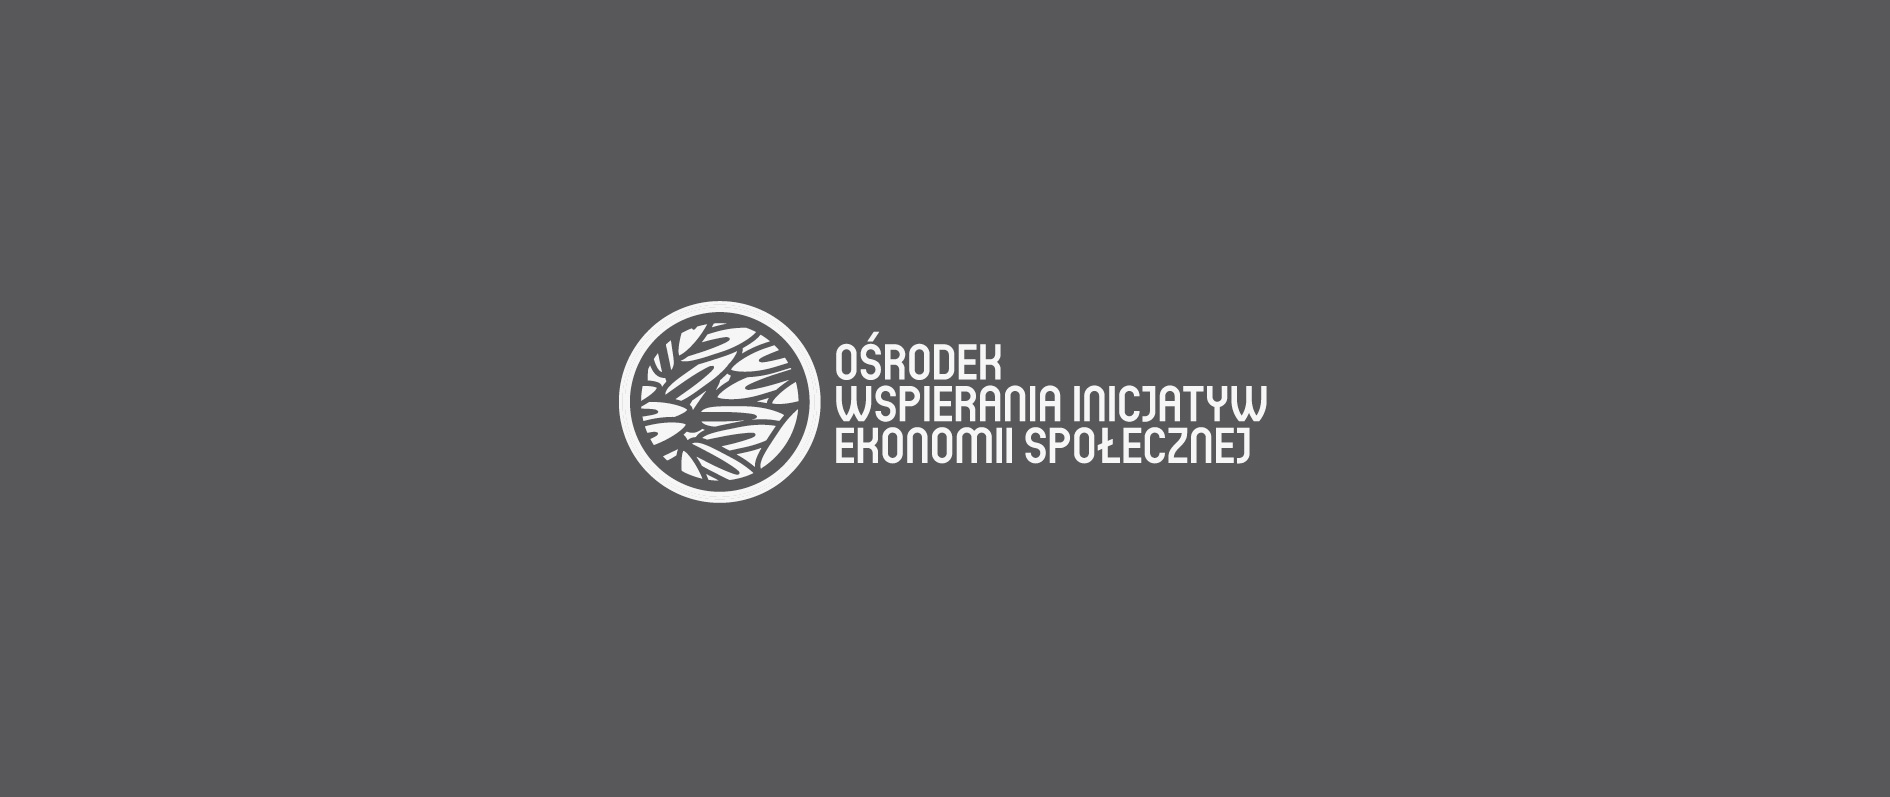 Ośrodek Wspierania Inicjatyw Ekonomii Społecznej w Elblągu (2019-2023)